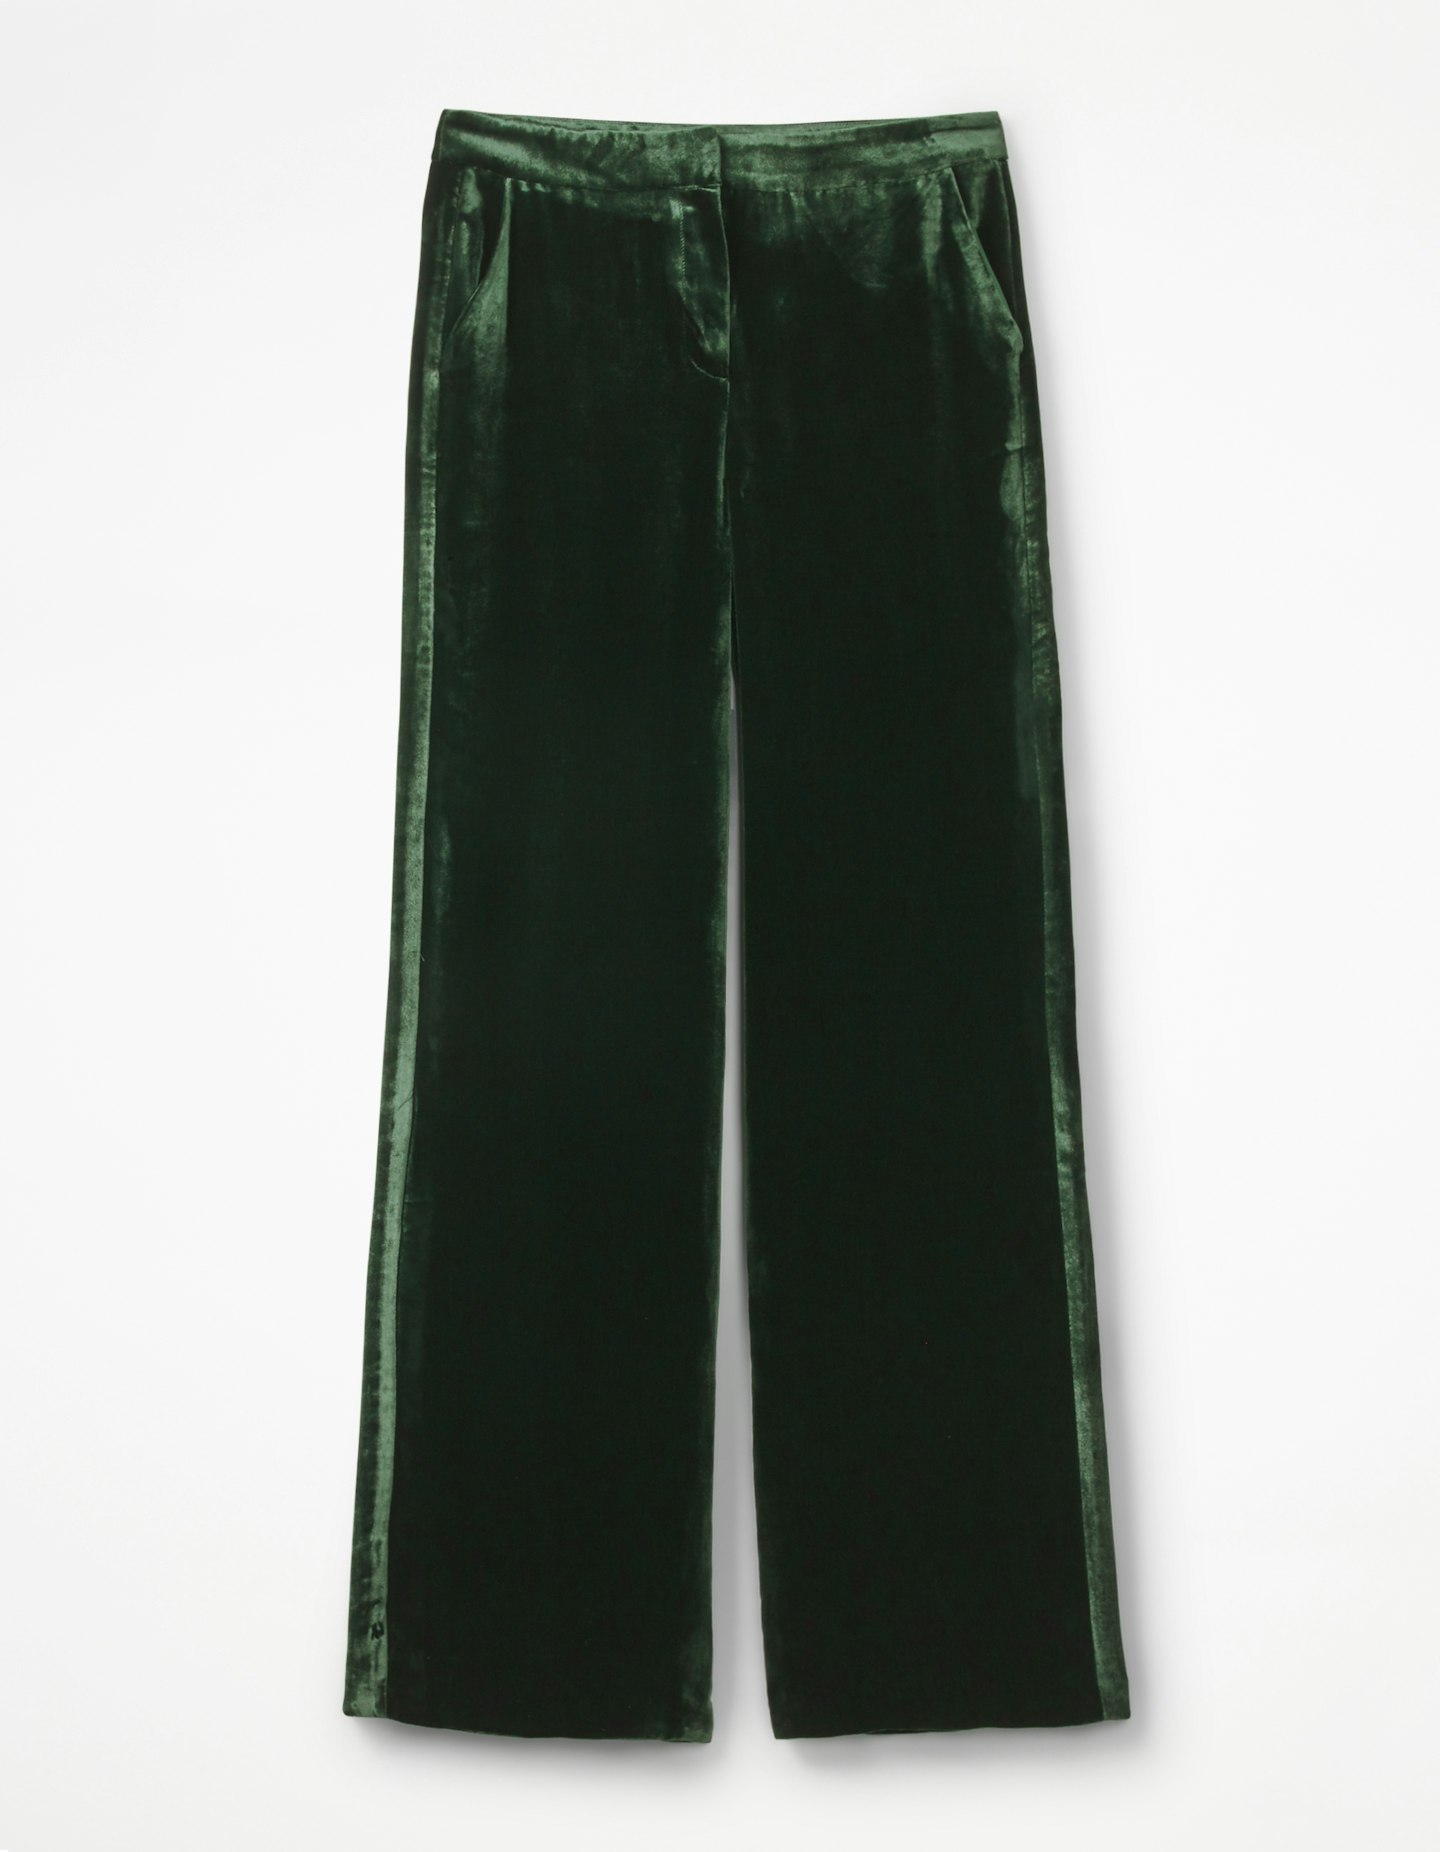 boden velvet trousers emerald green